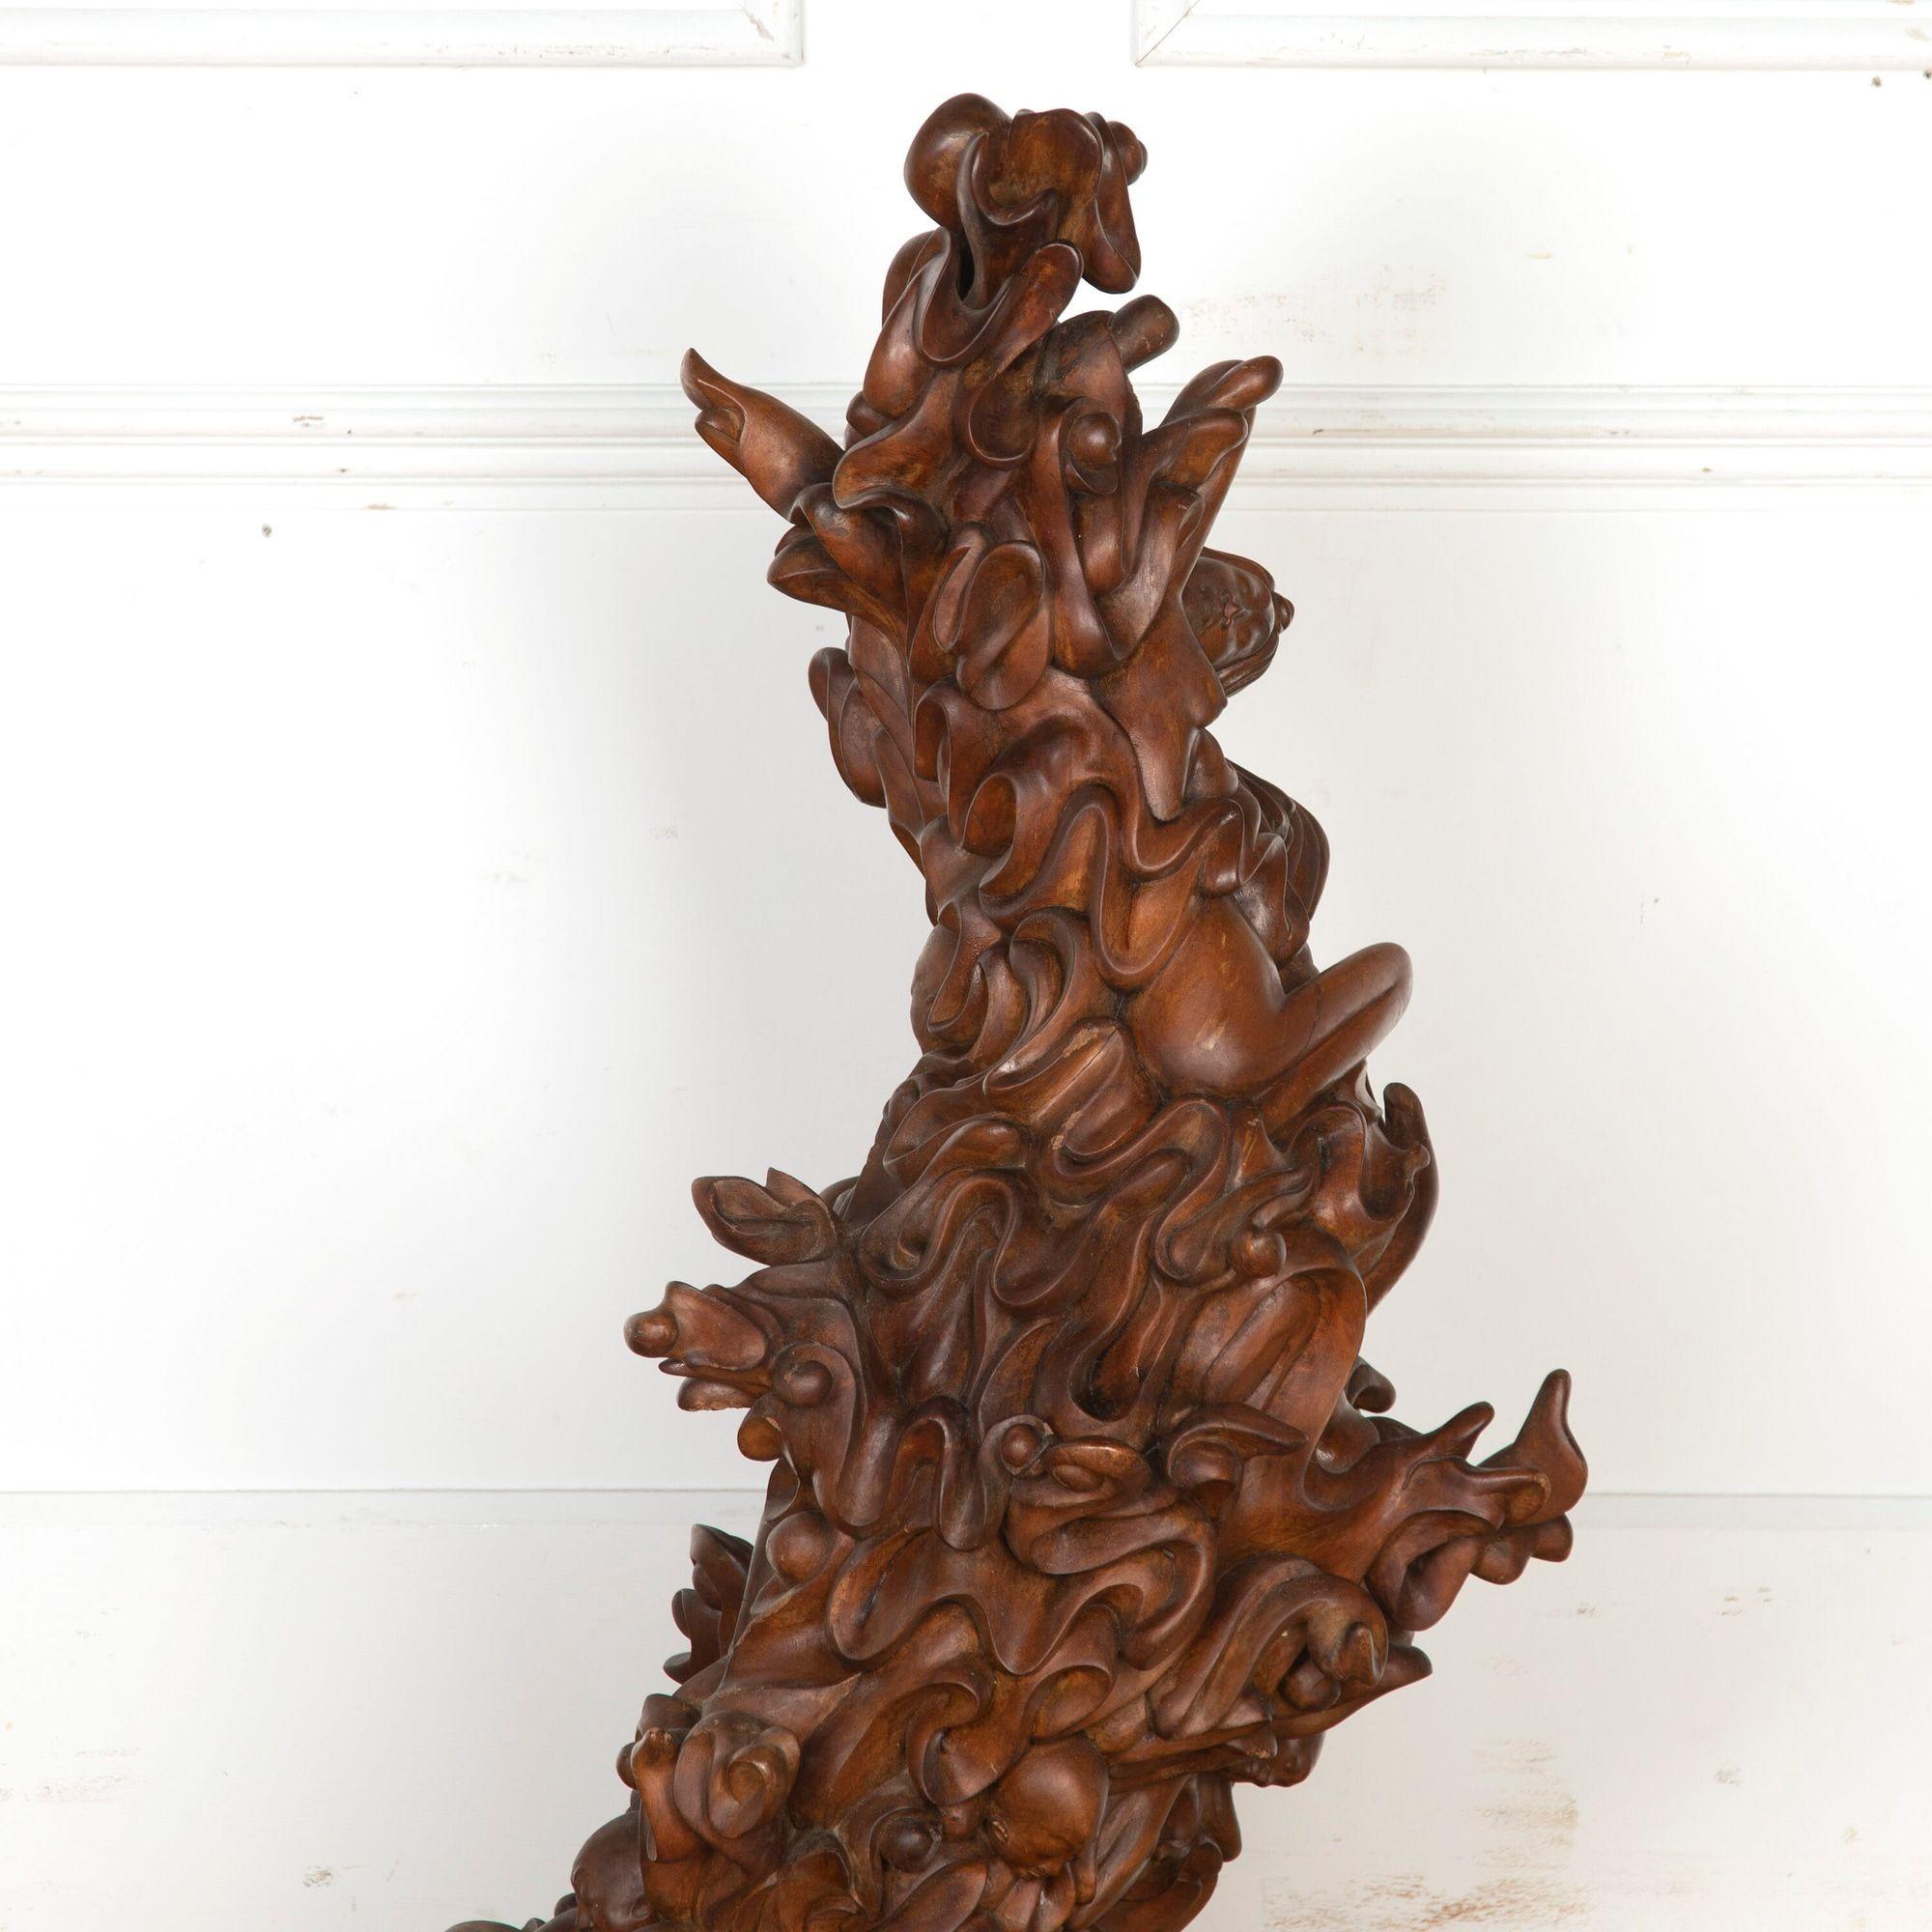 Fantastique sculpture biomorphique javanaise du 20e siècle. 
Cette magnifique sculpture sculptée à la main représente des vagues et des figures flottantes avec un mouvement merveilleux. 
Il est composé de bois riche et sombre, lisse au toucher et